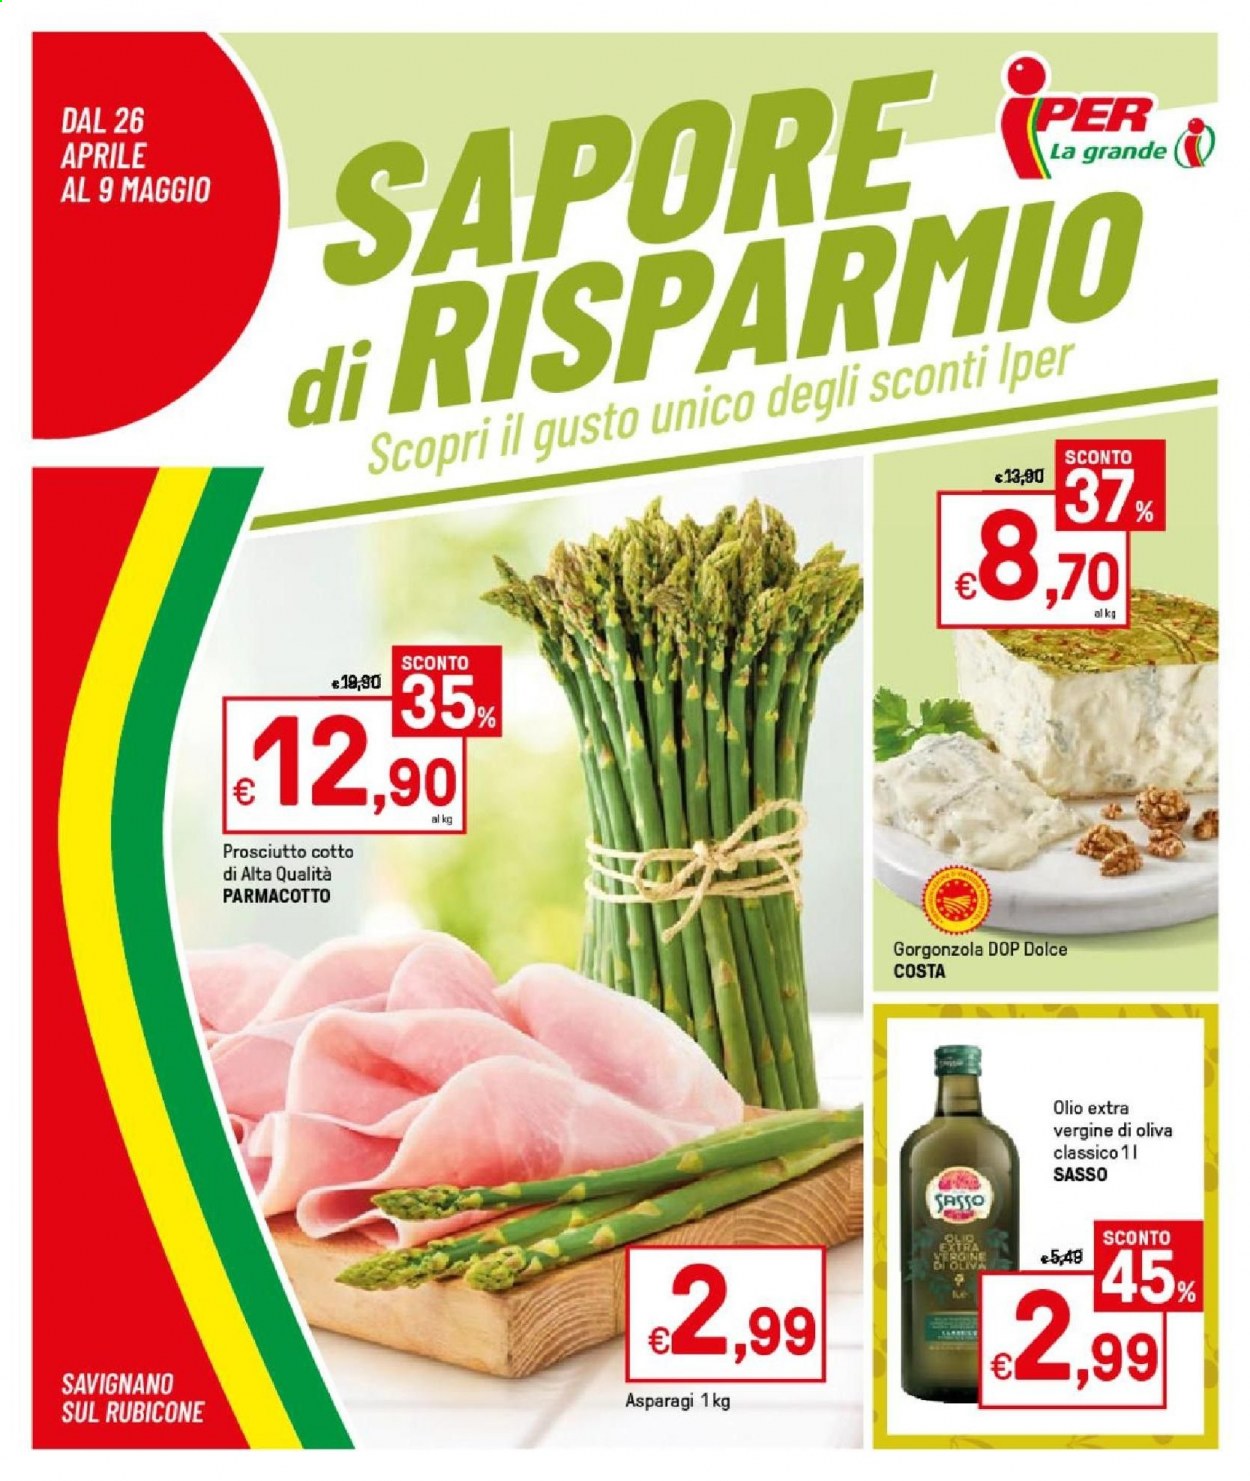 thumbnail - Volantino Iper, La grande i - 26/4/2021 - 9/5/2021 - Prodotti in offerta - asparagi, prosciutto, prosciutto cotto, formaggio, gorgonzola, olio, olio extra vergine di oliva. Pagina 1.